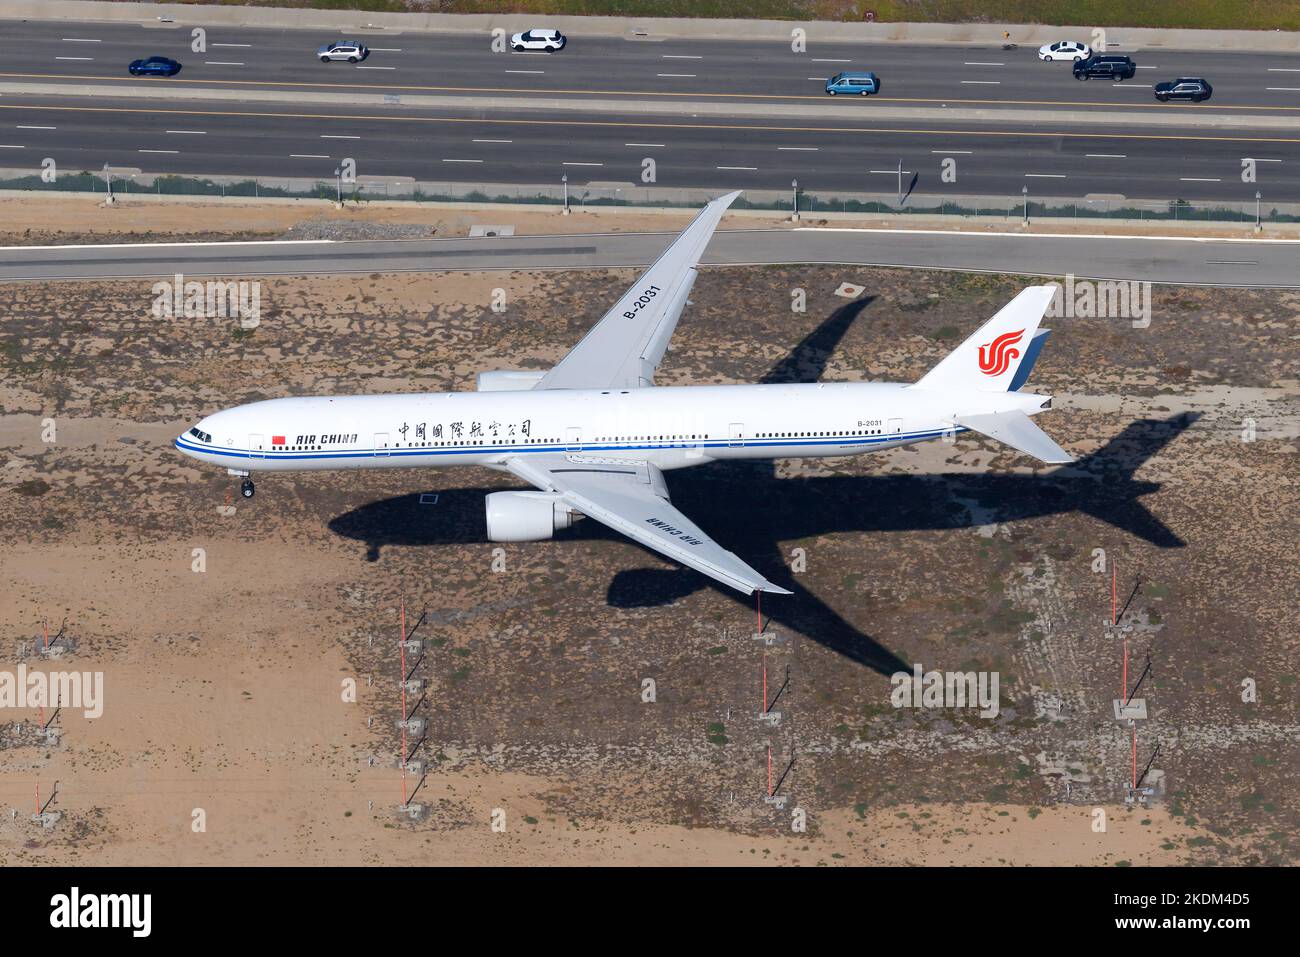 Air China Boeing 777 Landung von Flugzeugen. Das Flugzeugmodell 777-300ER von Air China wurde als B-2031 registriert. Flugzeug der chinesischen Fluggesellschaft namens AirChina. Stockfoto